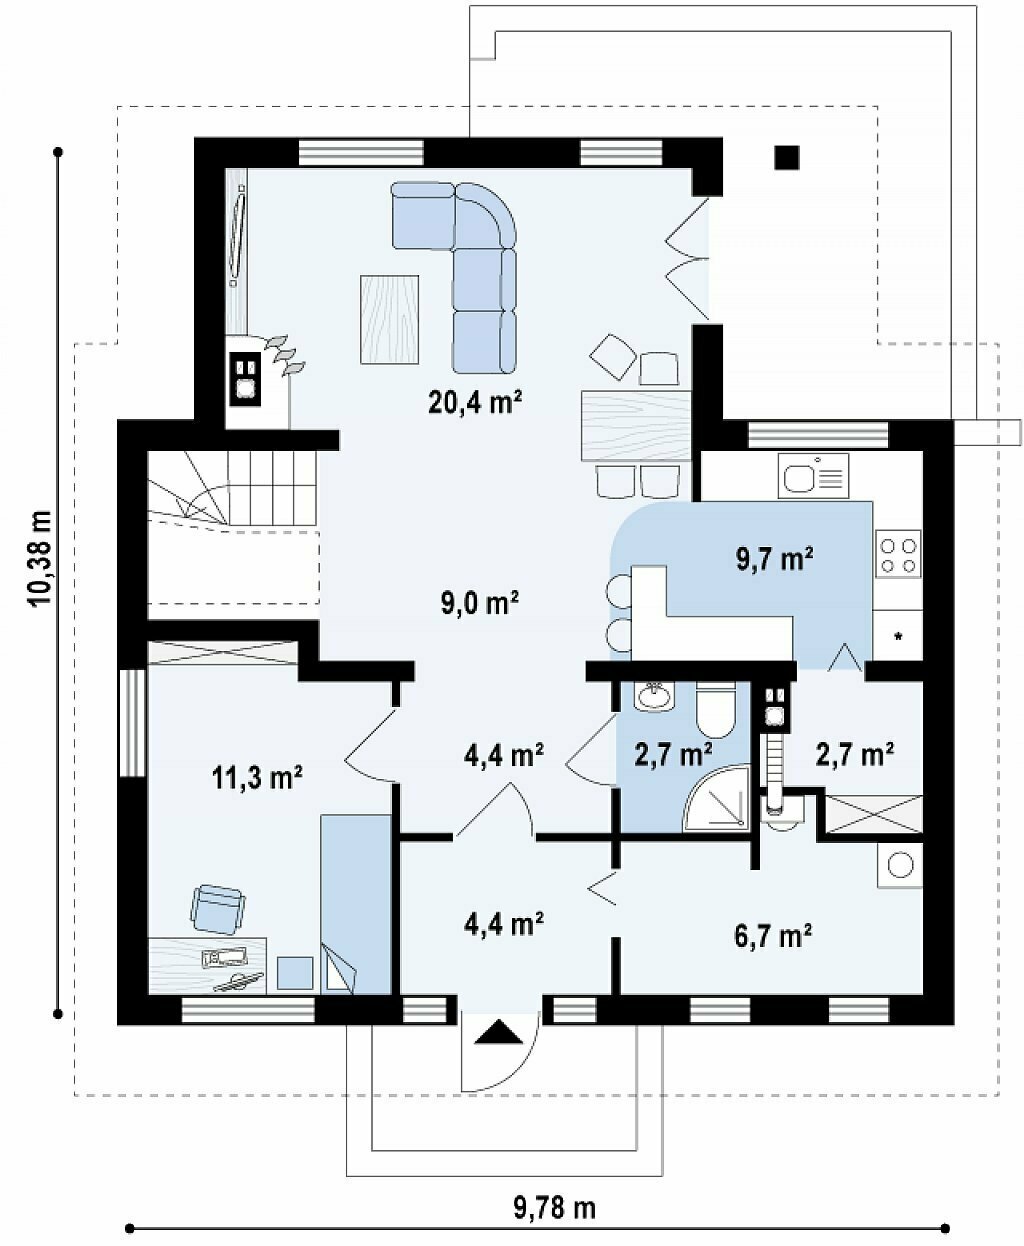 Дом ГБ-143 - план первого этажа